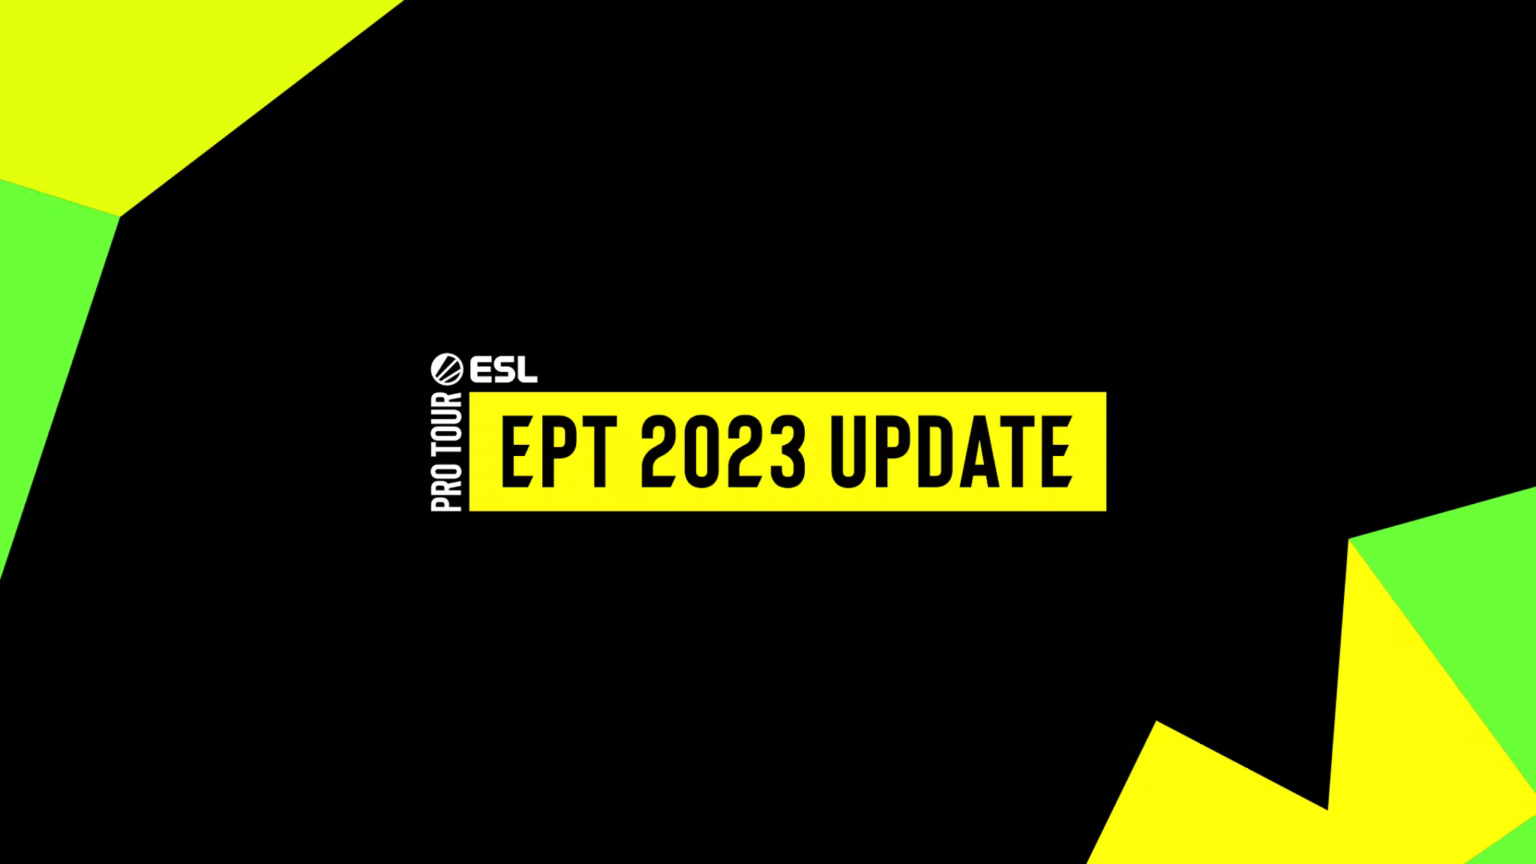 esl змінює процес кваліфікації для подій esl pro tour у 2023 році